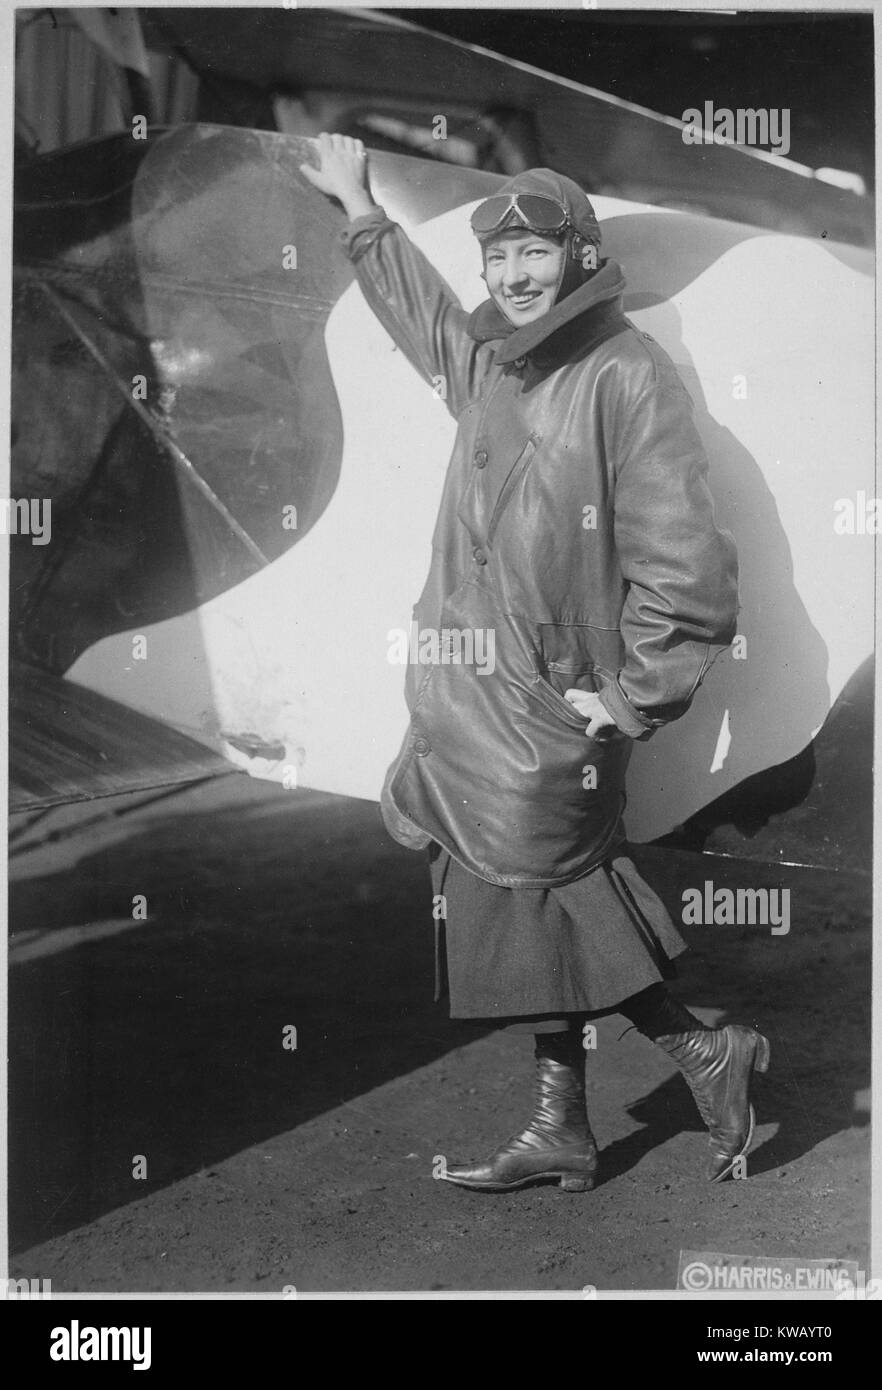 La sola donna ha concesso una licenza di pilota da parte dell'esercito americano e la marina comitato di aeronautica, Marjorie Stinson pone accanto a un aeromobile, indossando un abito al di sotto di un grande bomber e un pilota della PAC con gli occhiali, Harris e Ewing, 1917. Immagine cortesia archivi nazionali. Foto Stock